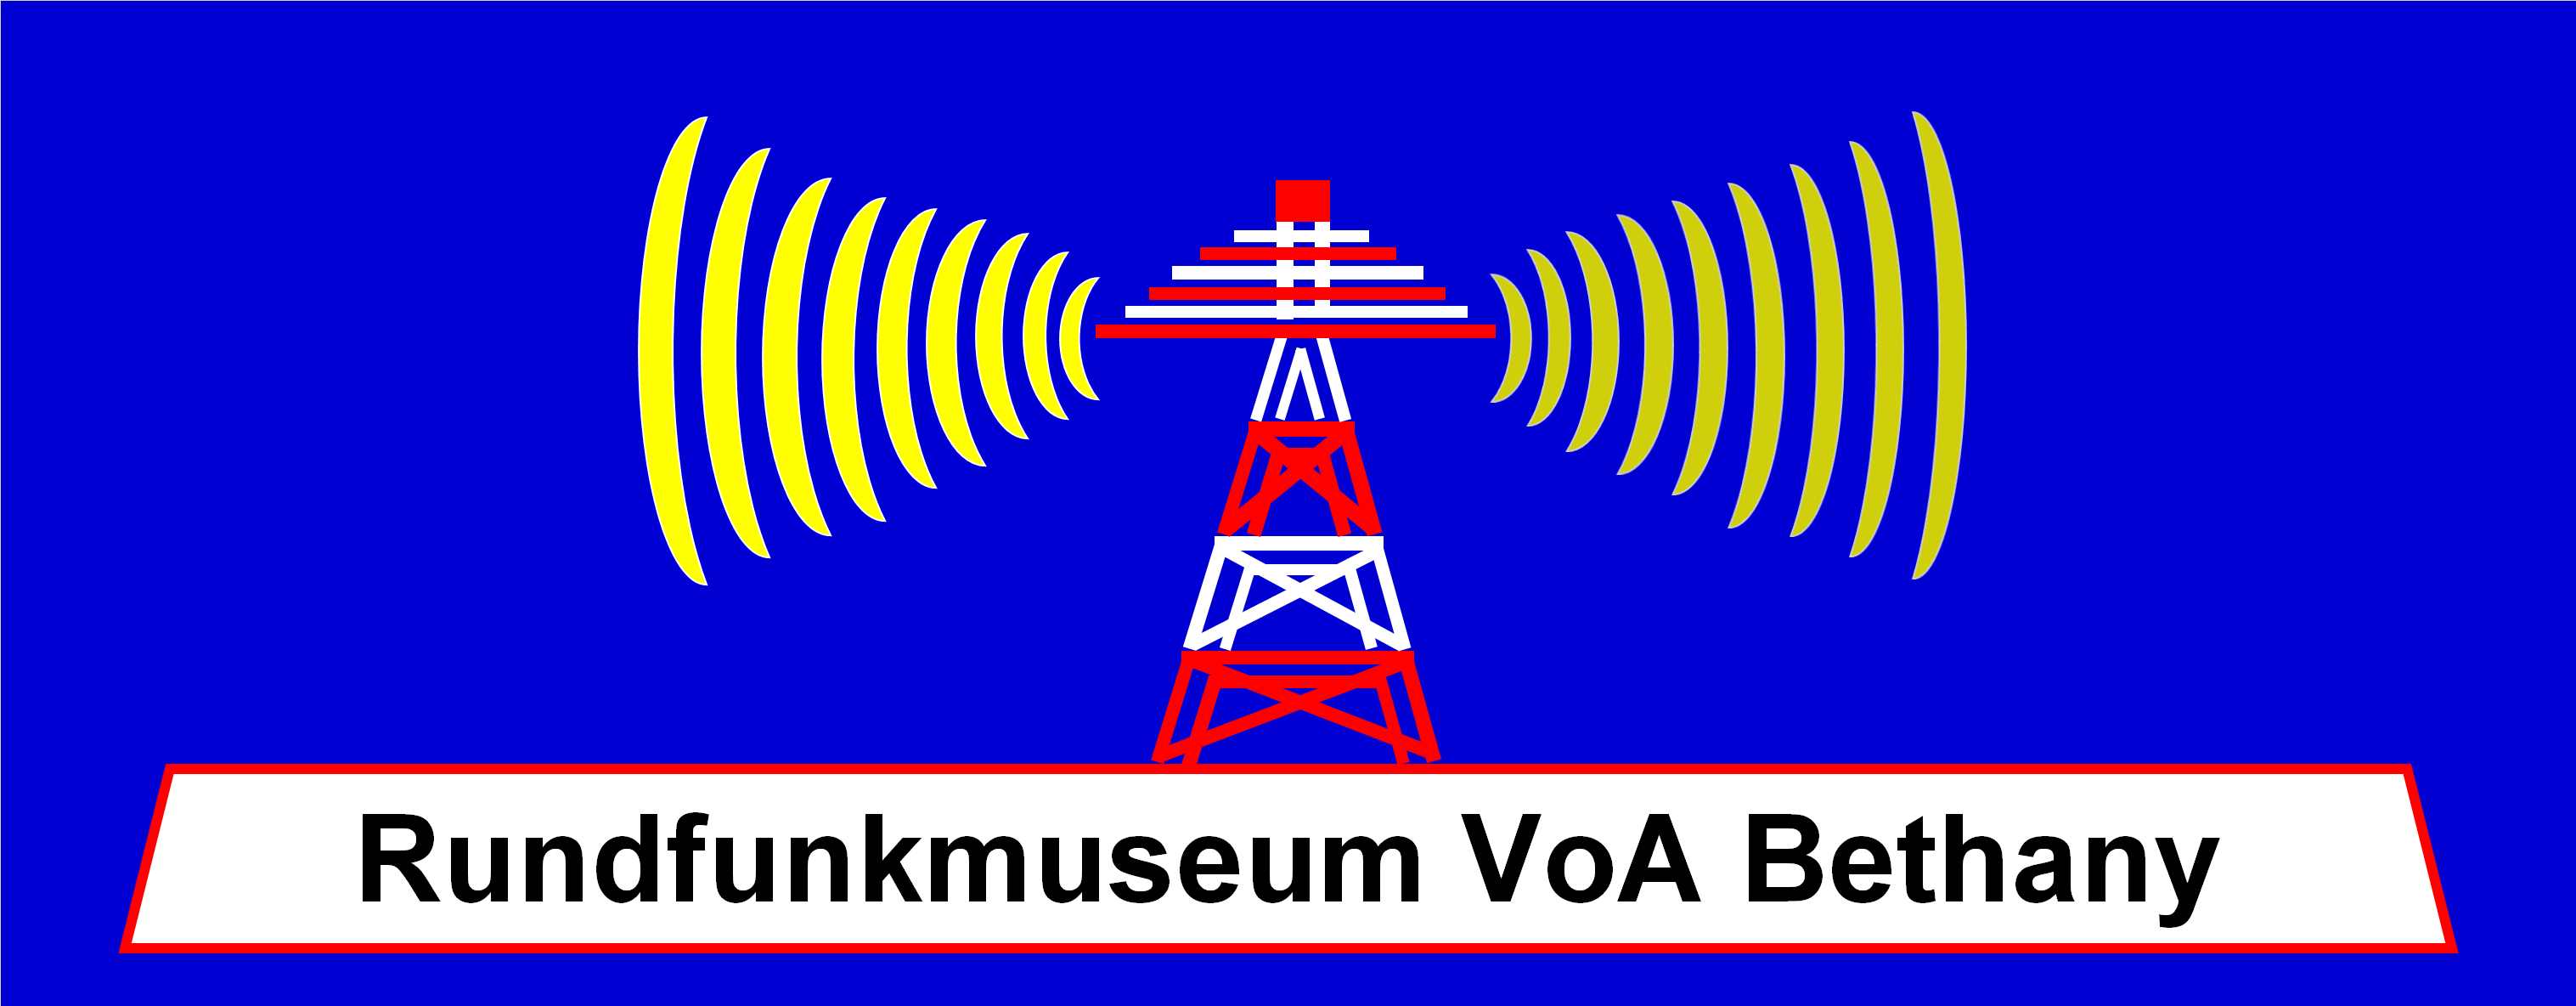 Rundfunkmuseum VoA Bethany